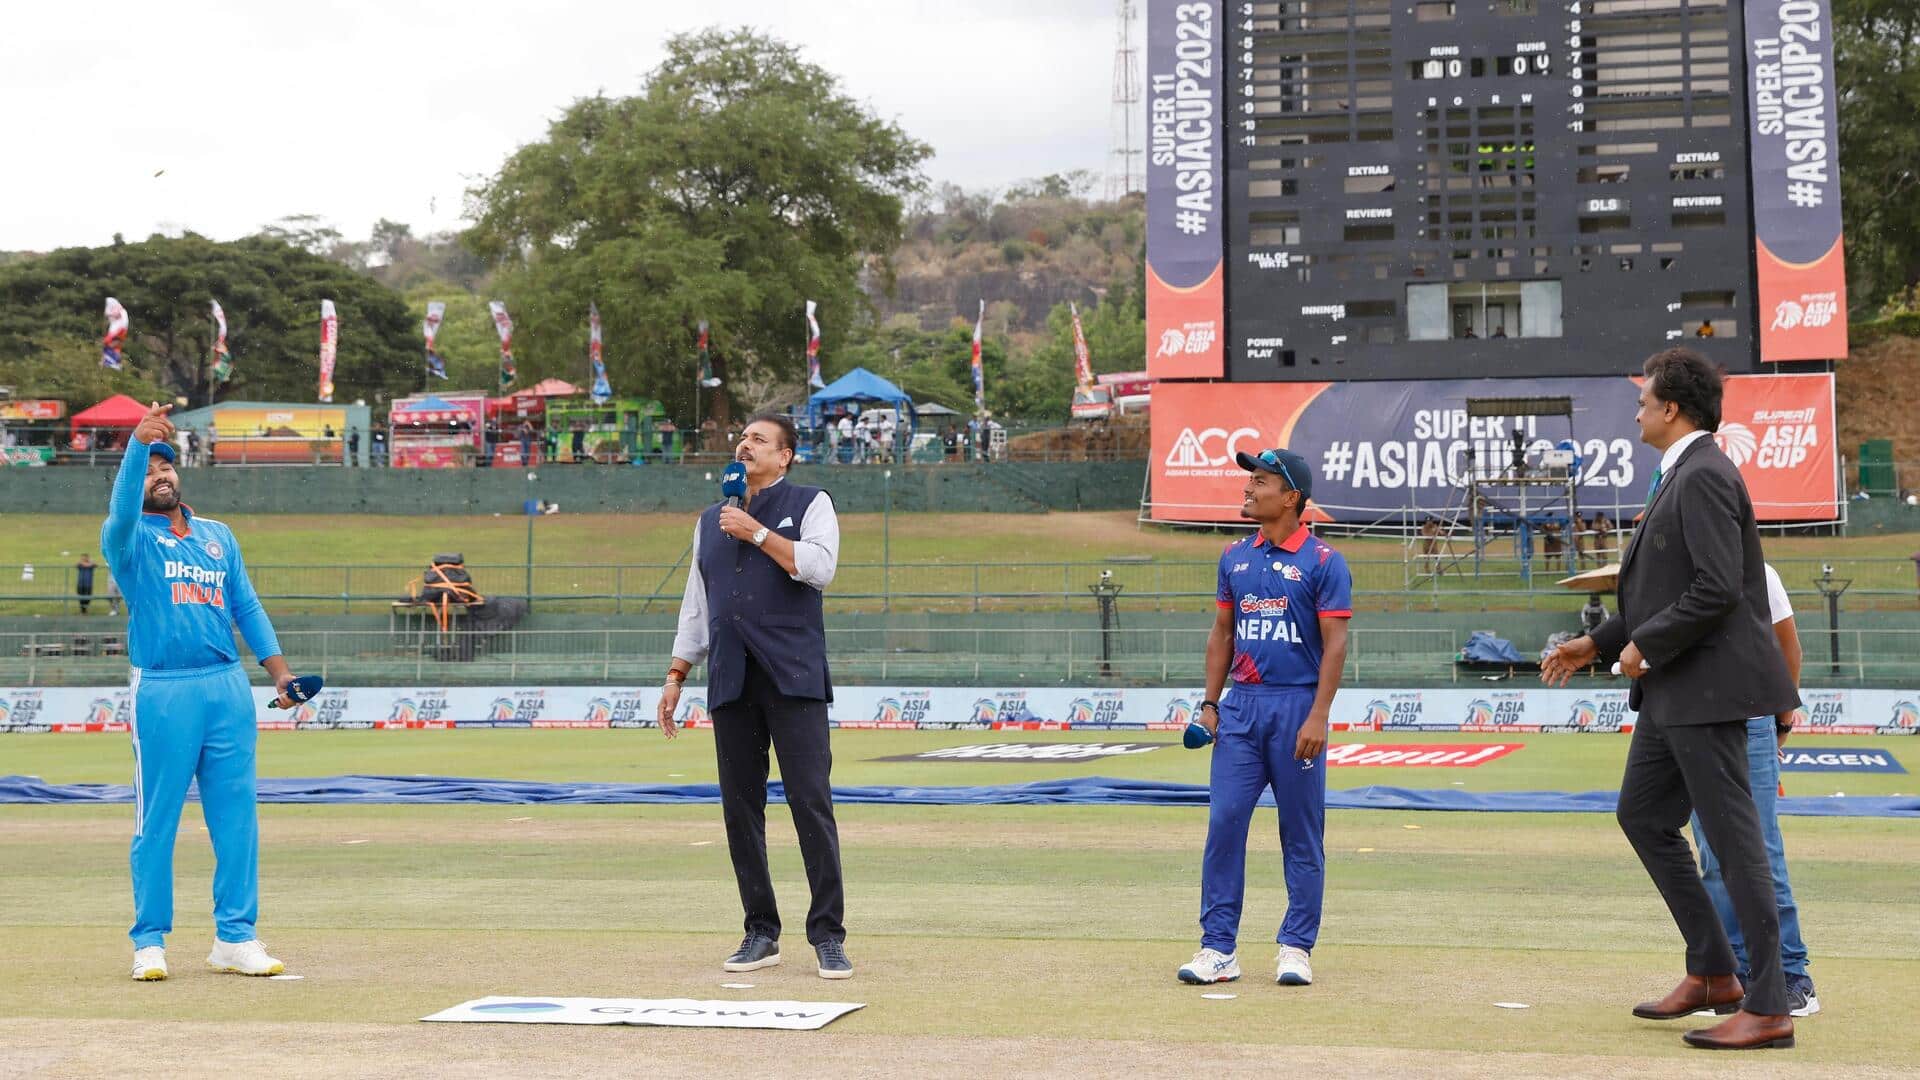 भारत बनाम नेपाल: रोहित शर्मा ने गेंदबाजी परखने के लिए चुनी फील्डिंग, जानिए और क्या कहा